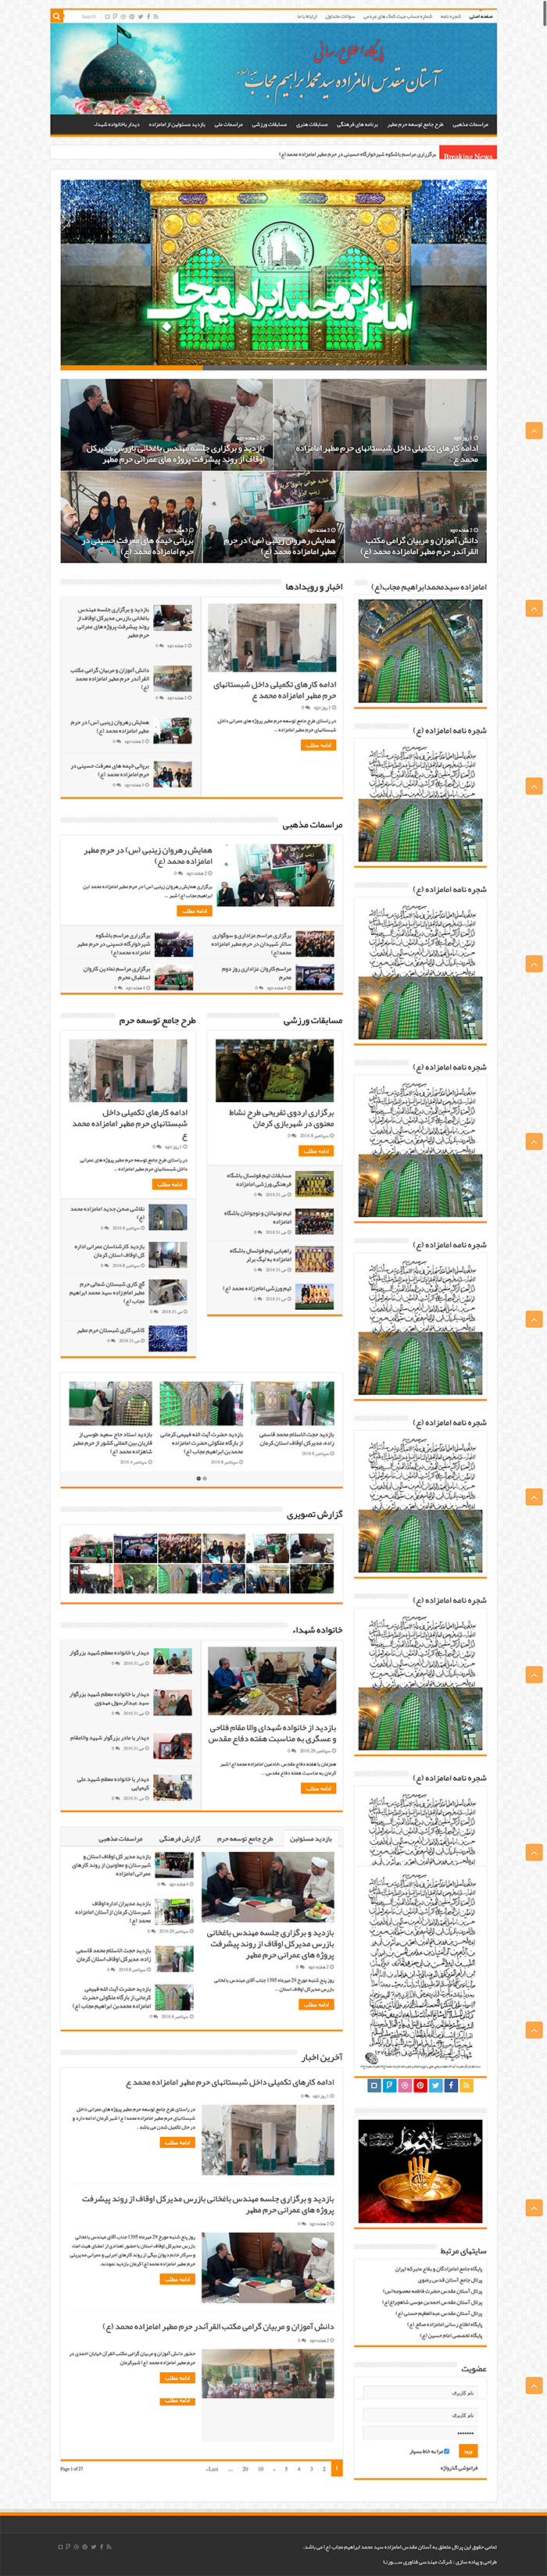 طراحی سایت امام زاده محمد توسط شرکت طراحی سایت سورنا در کرمان